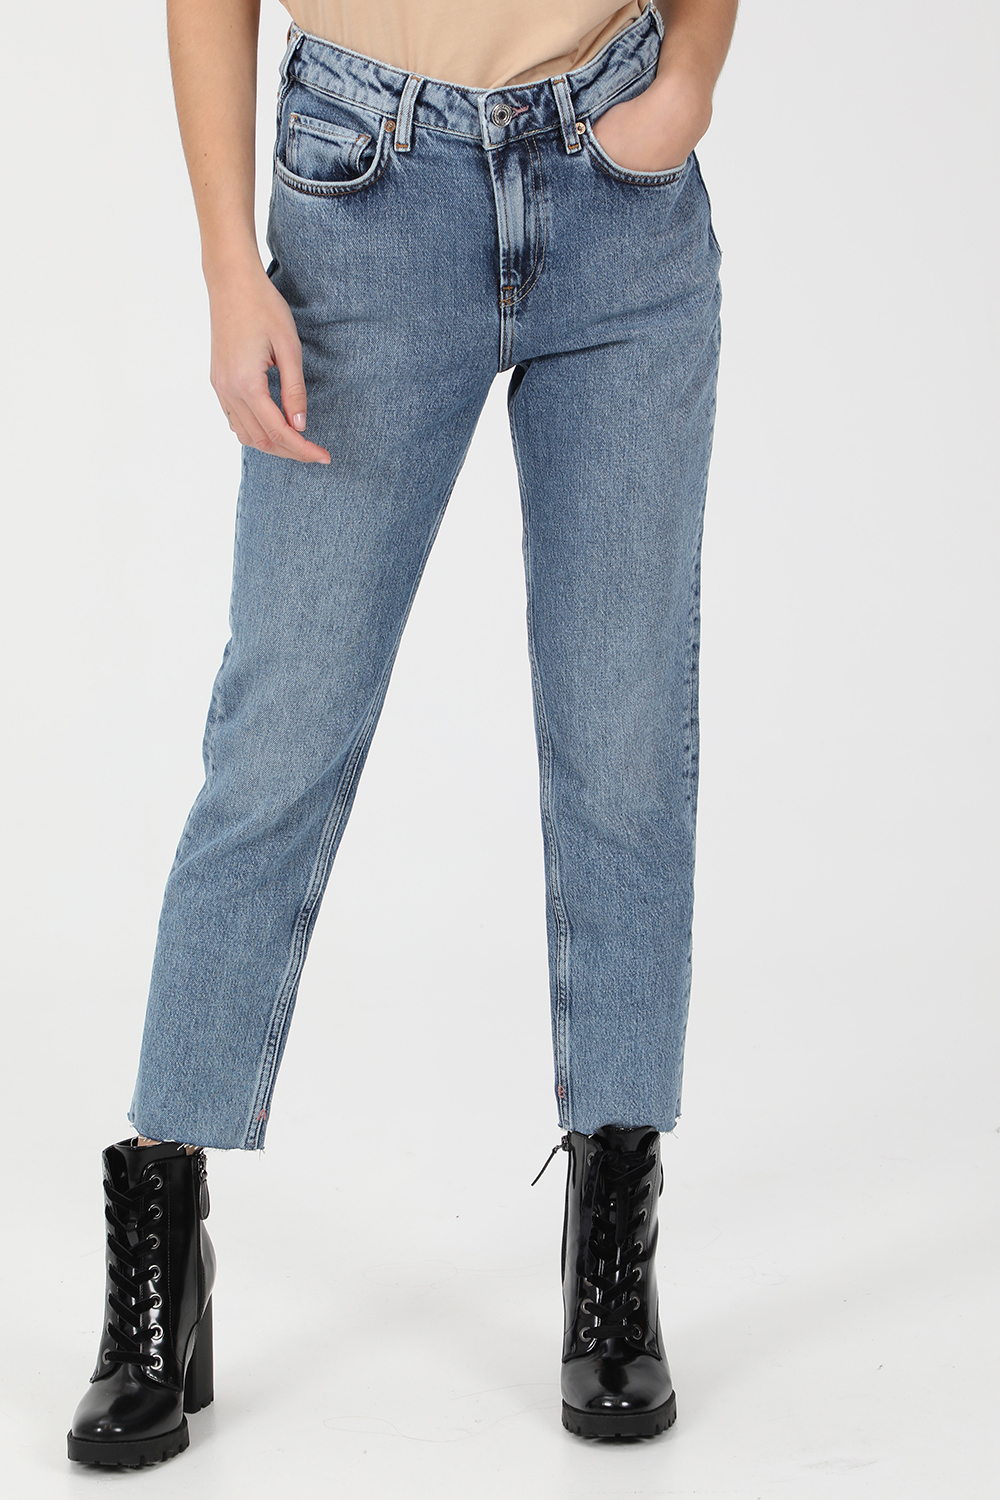 Γυναικεία/Ρούχα/Τζίν/Skinny SCOTCH & SODA - Γυναικείο jean παντελόνι SCOTCH & SODA 5 pocket high rise slim fit μπλε